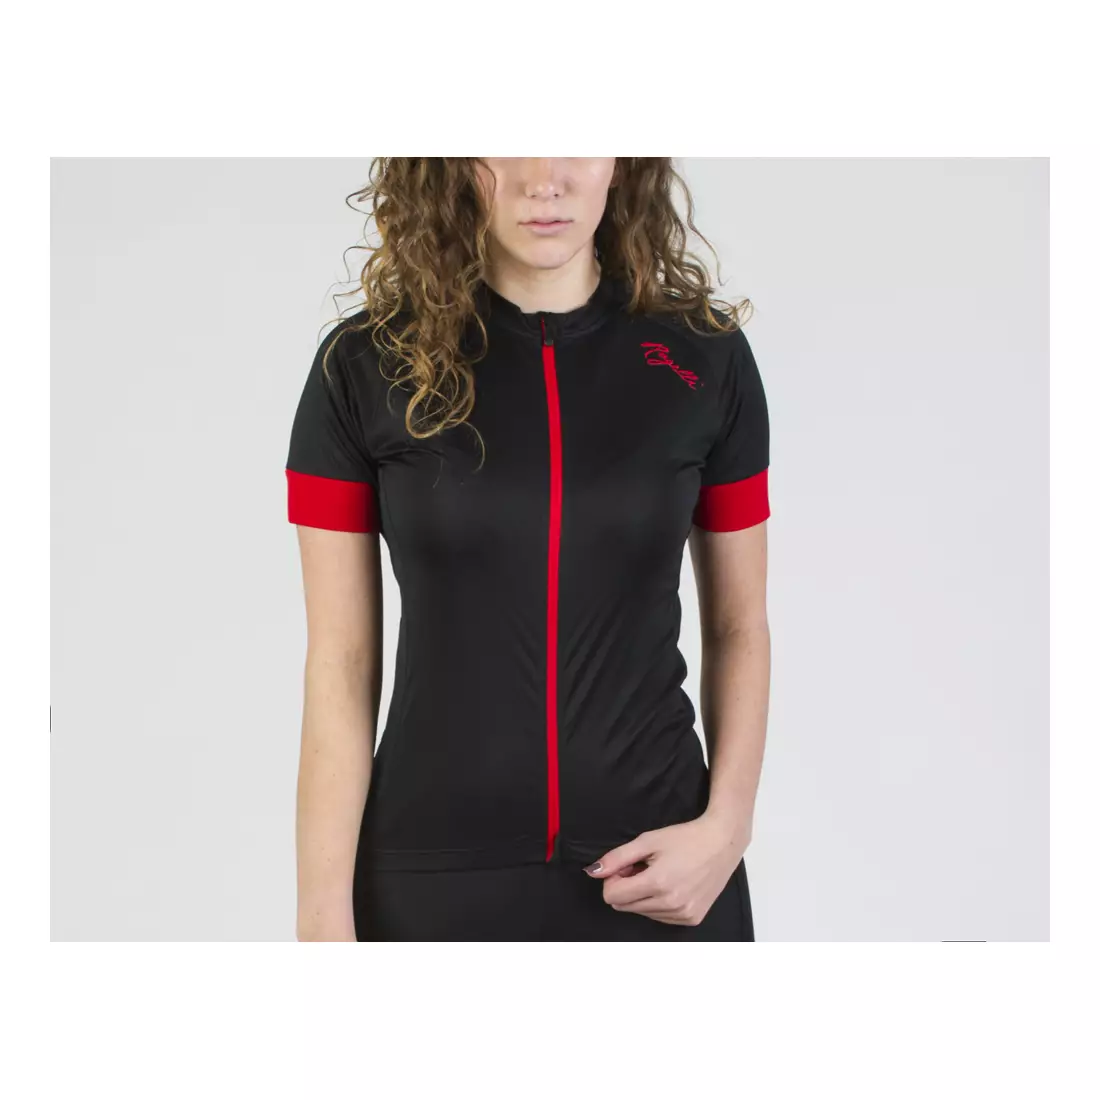 Dámsky cyklistický dres ROGELLI MODESTA, čierno-červený